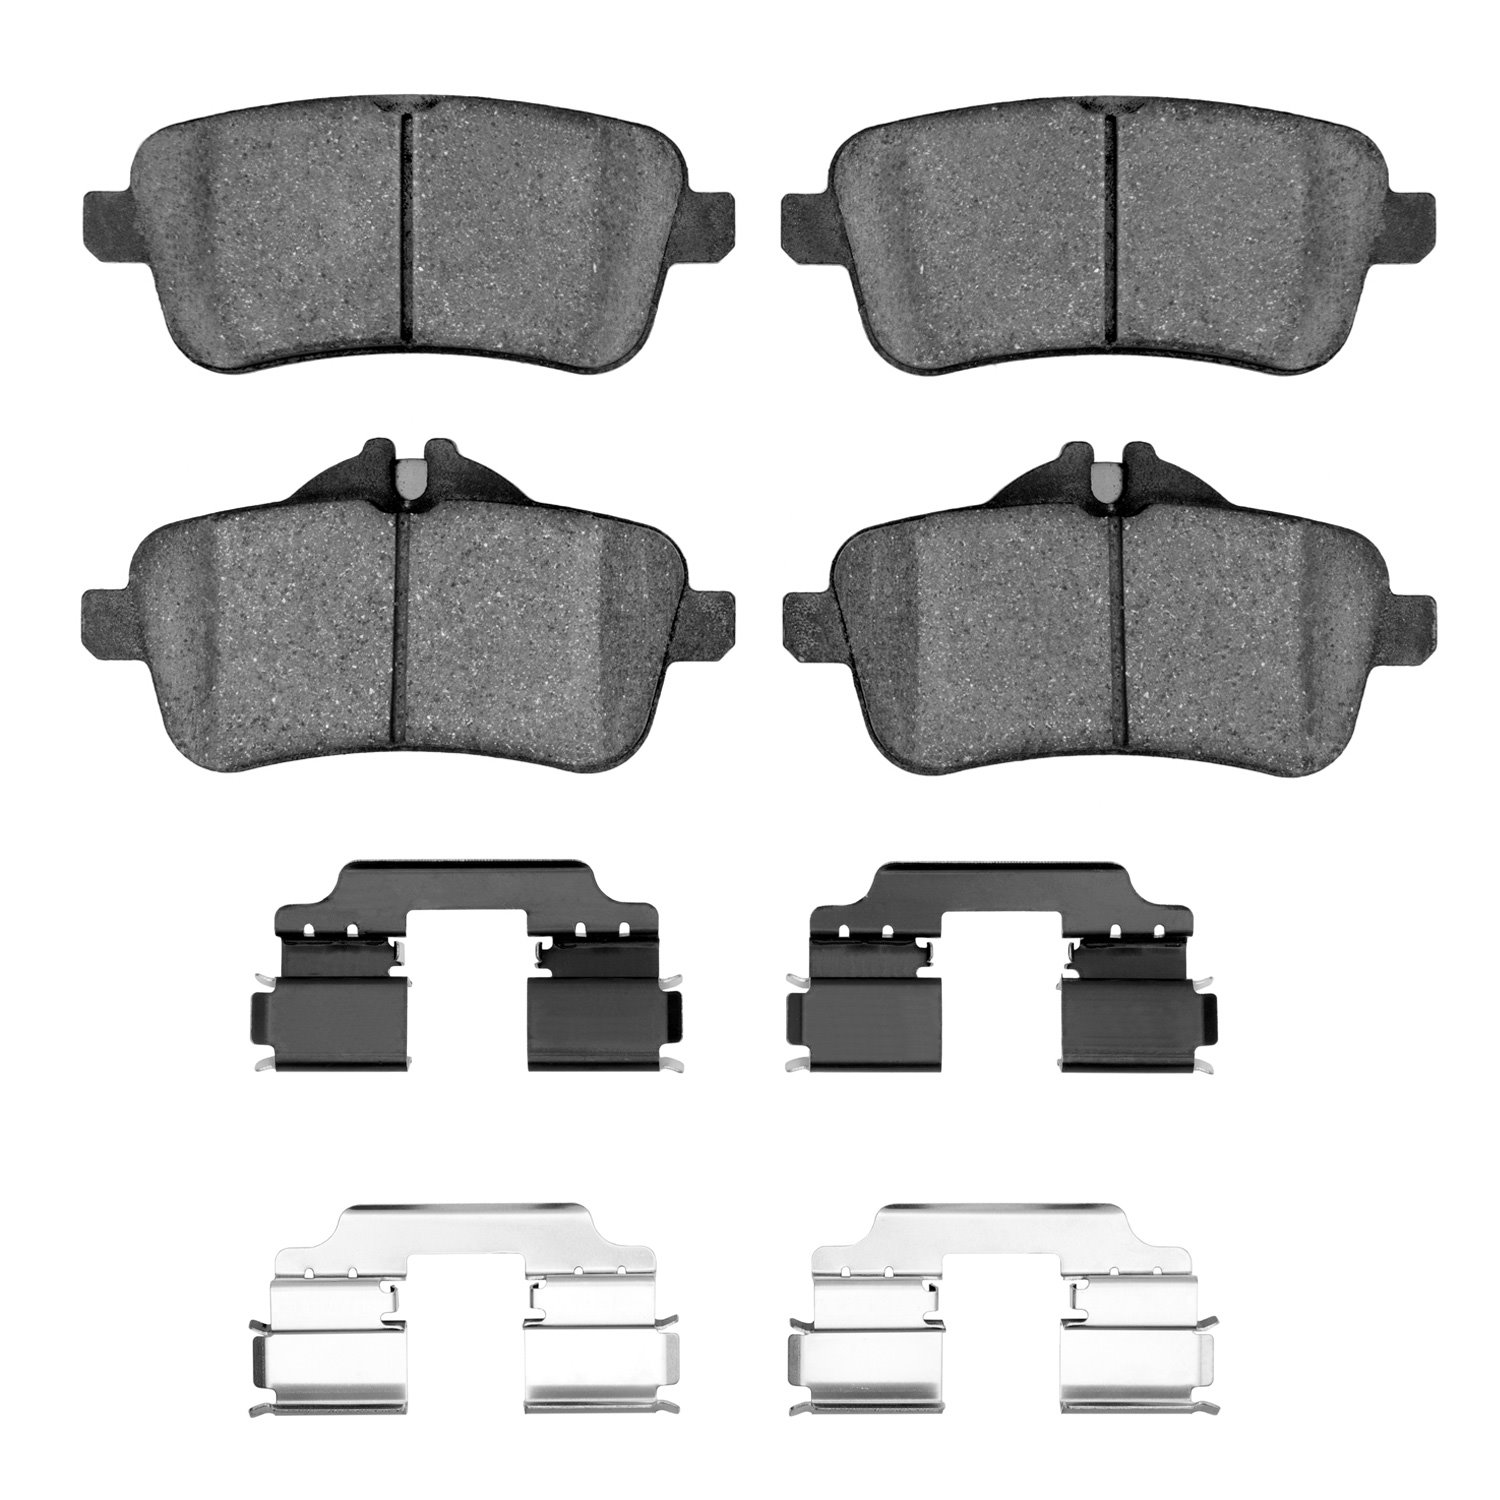 1600-1630-02 5000 Euro Ceramic Brake Pads & Hardware Kit, 2012-2018 Mercedes-Benz, Position: Rear